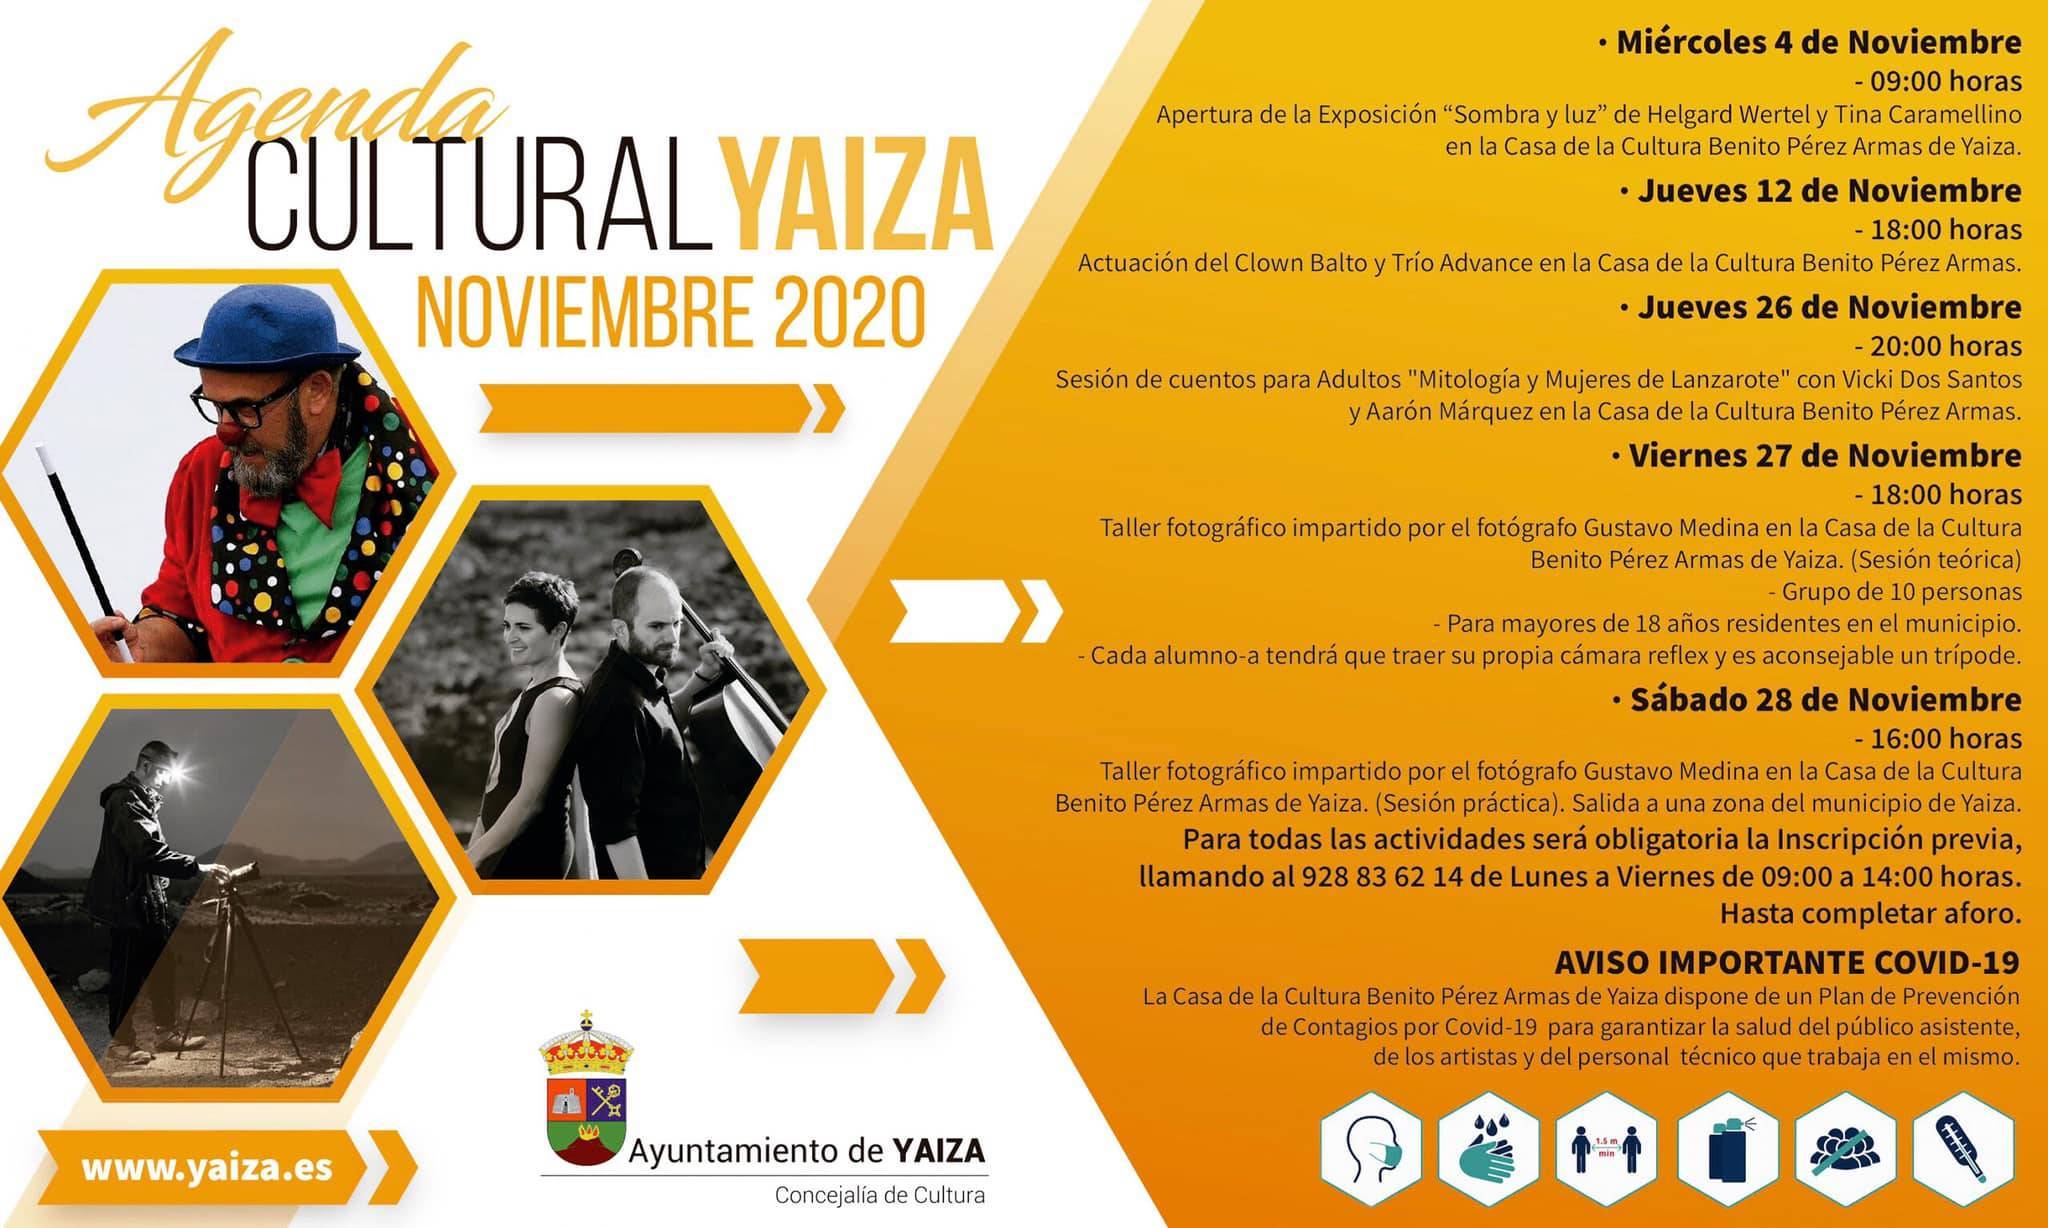 Agenda cultural (noviembre 2020) - Yaiza (Las Palmas)